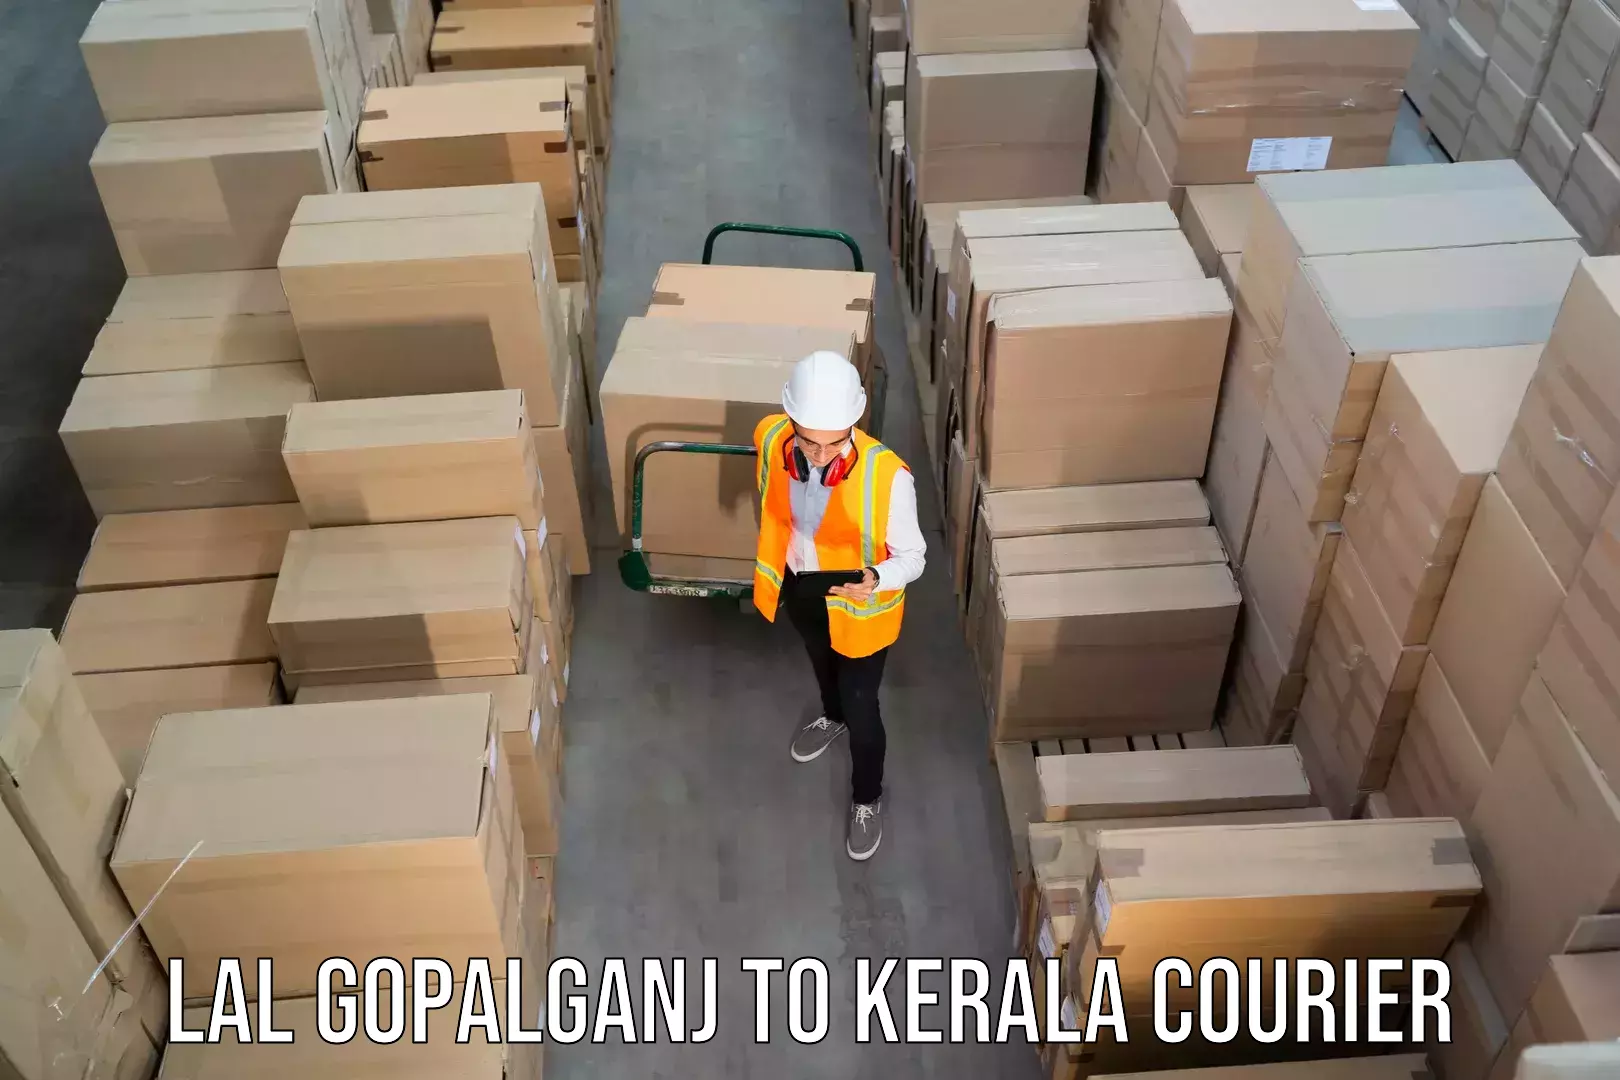 Reliable parcel services Lal Gopalganj to Palai